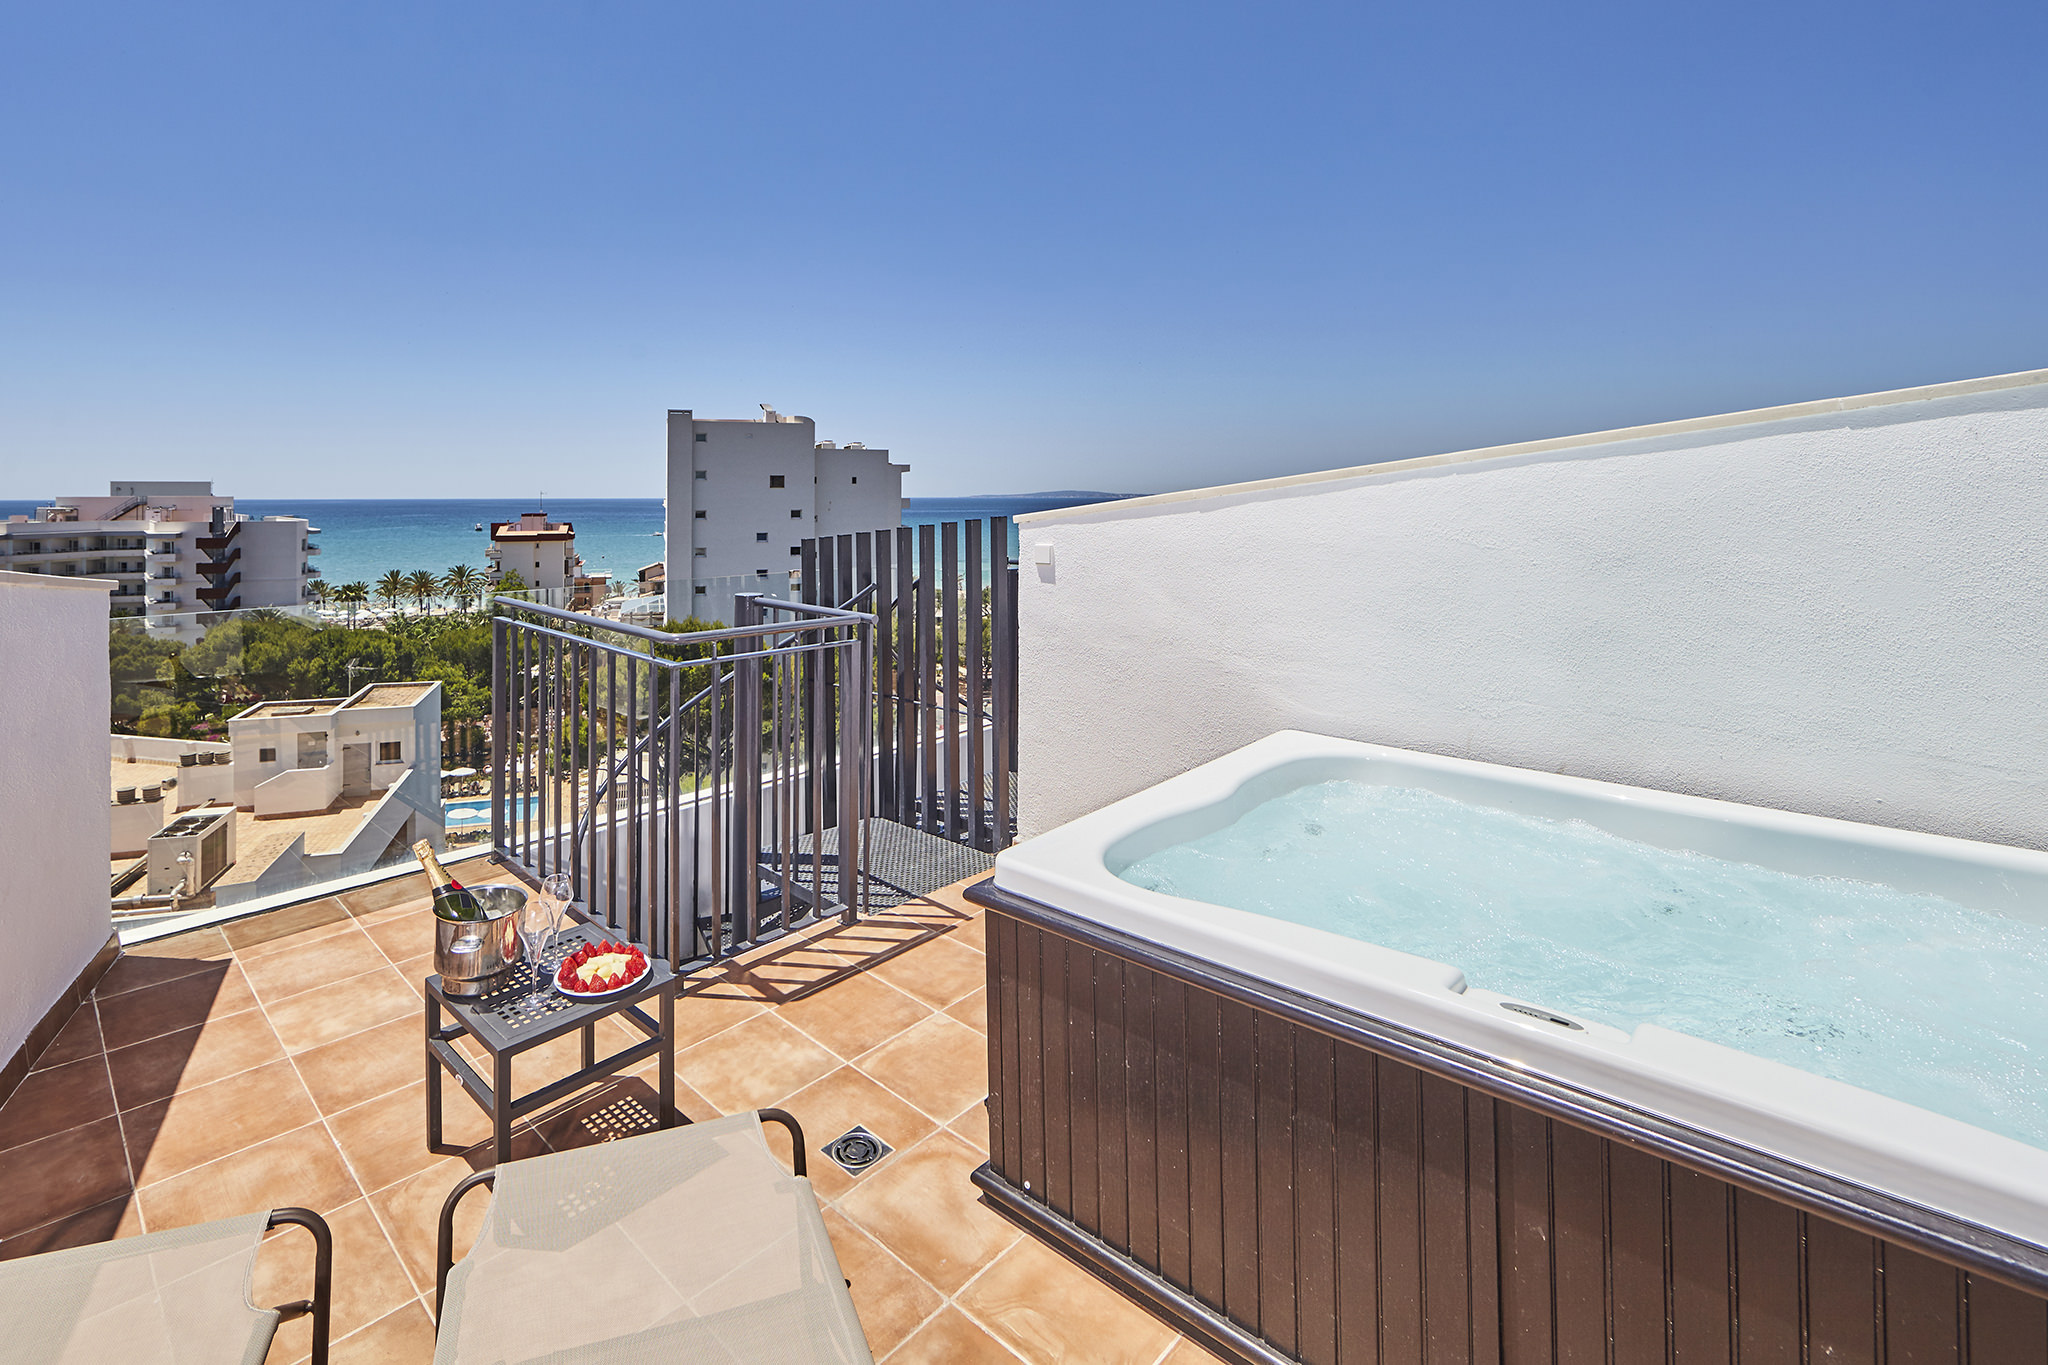 Buchen Sie Ihren Doppelzimmer Meerblick im Hotel Principe in Playa de Palma